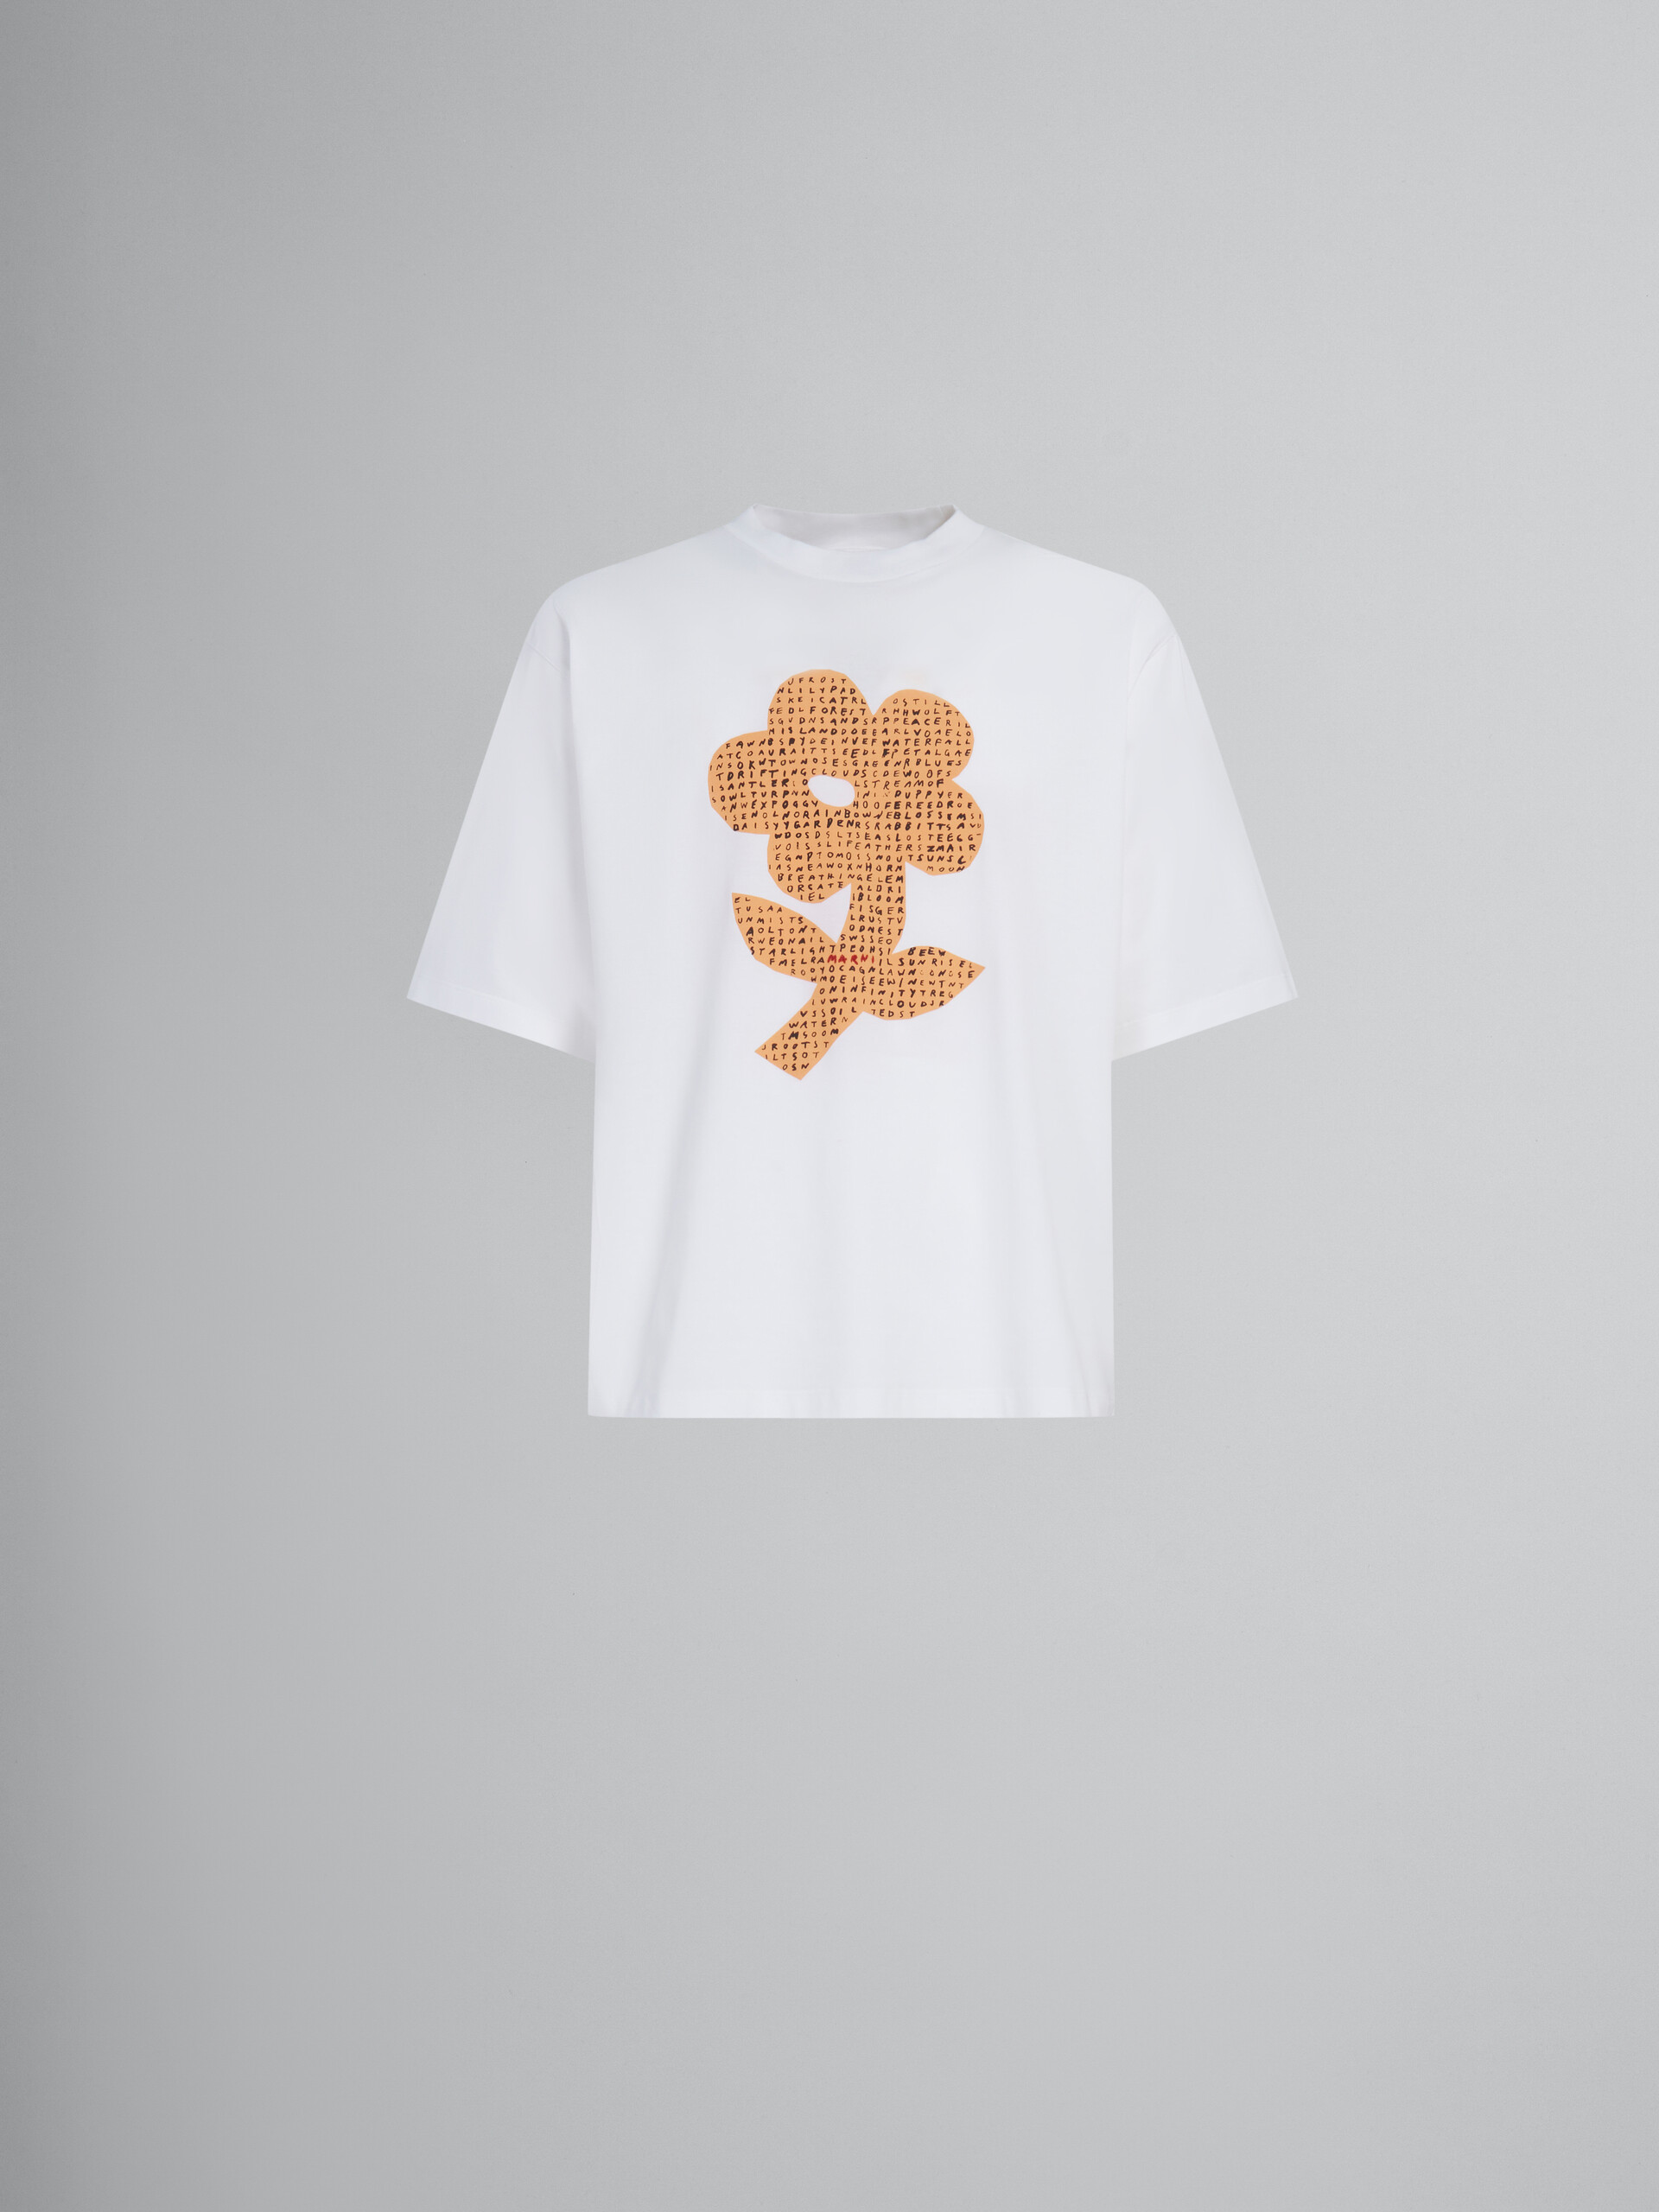 T-shirt en coton biologique blanc avec imprimé fleur et mots mêlés - T-shirts - Image 1